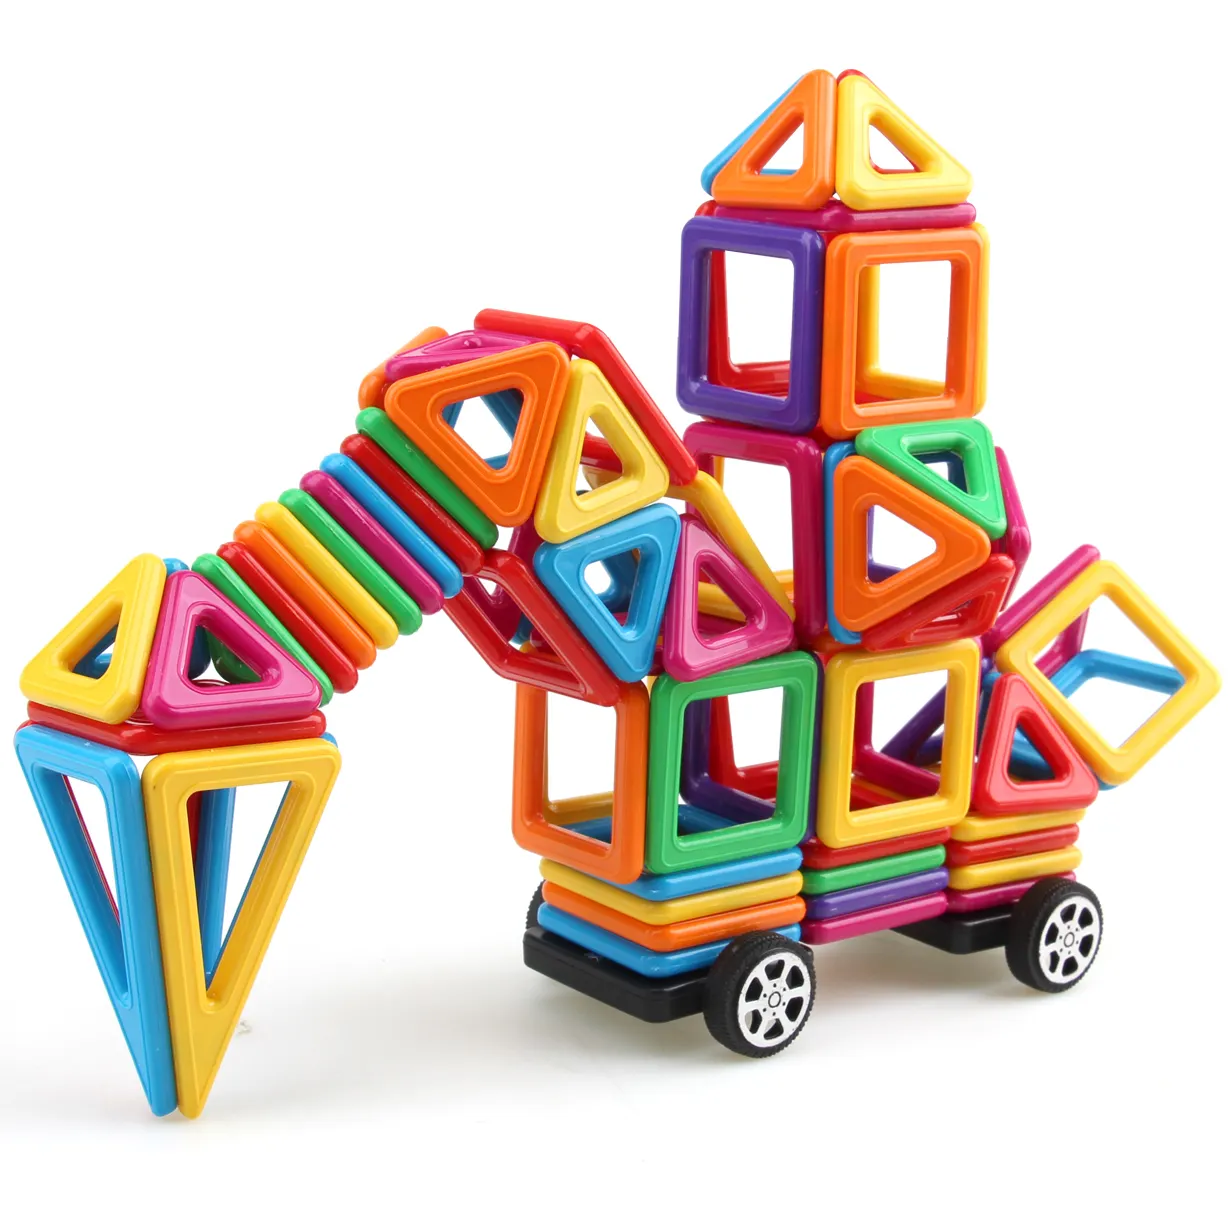 Mainan Blok Bangunan Magnetik Anak-anak, Murah 76 Buah